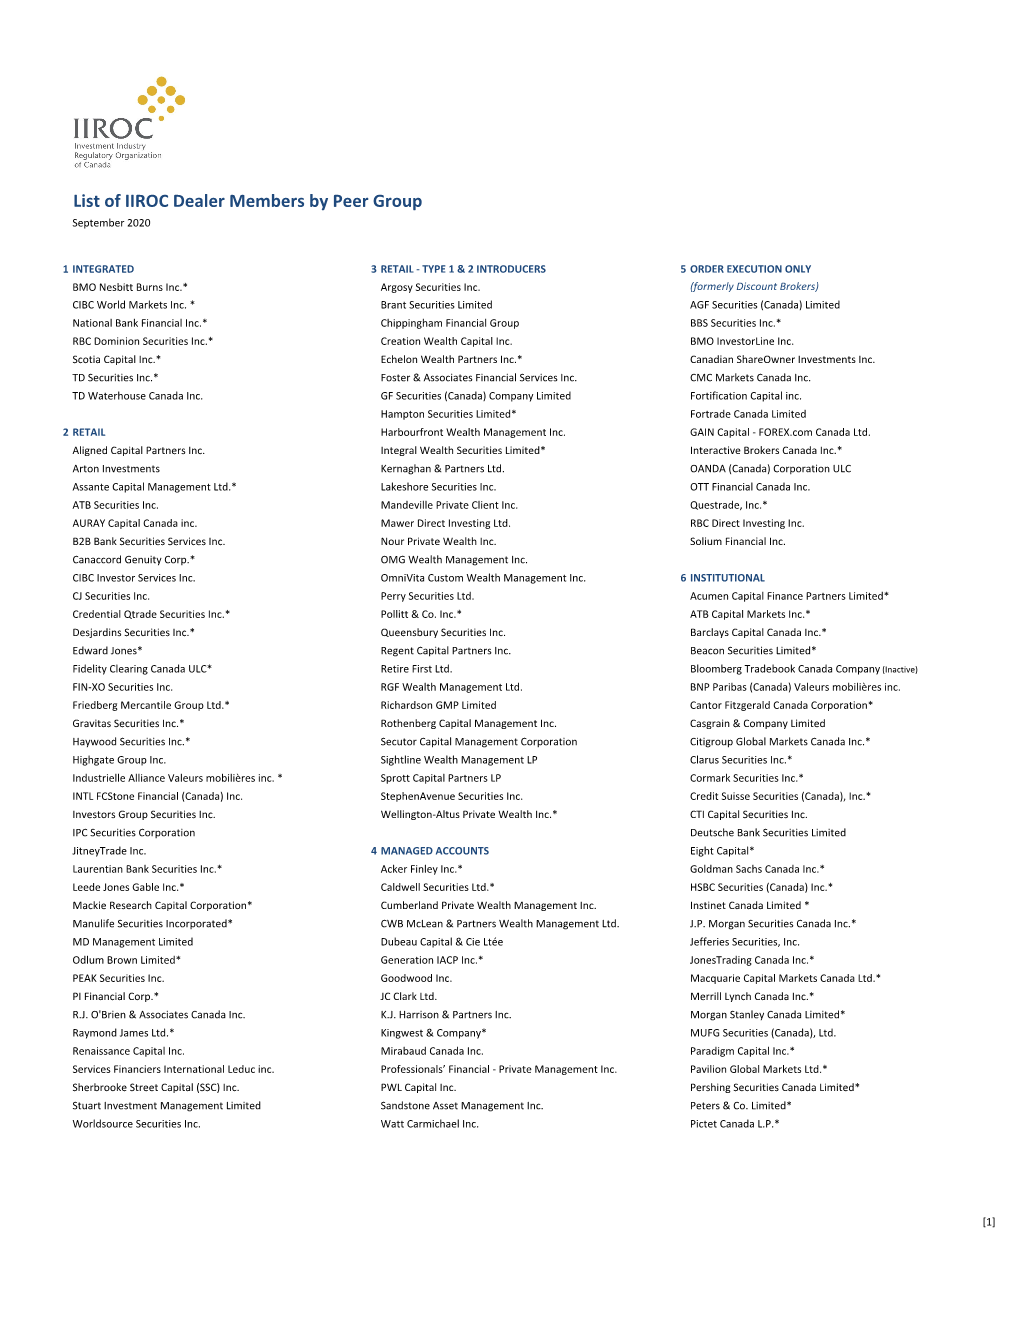 List of IIROC Dealer Members by Peer Group September 2020